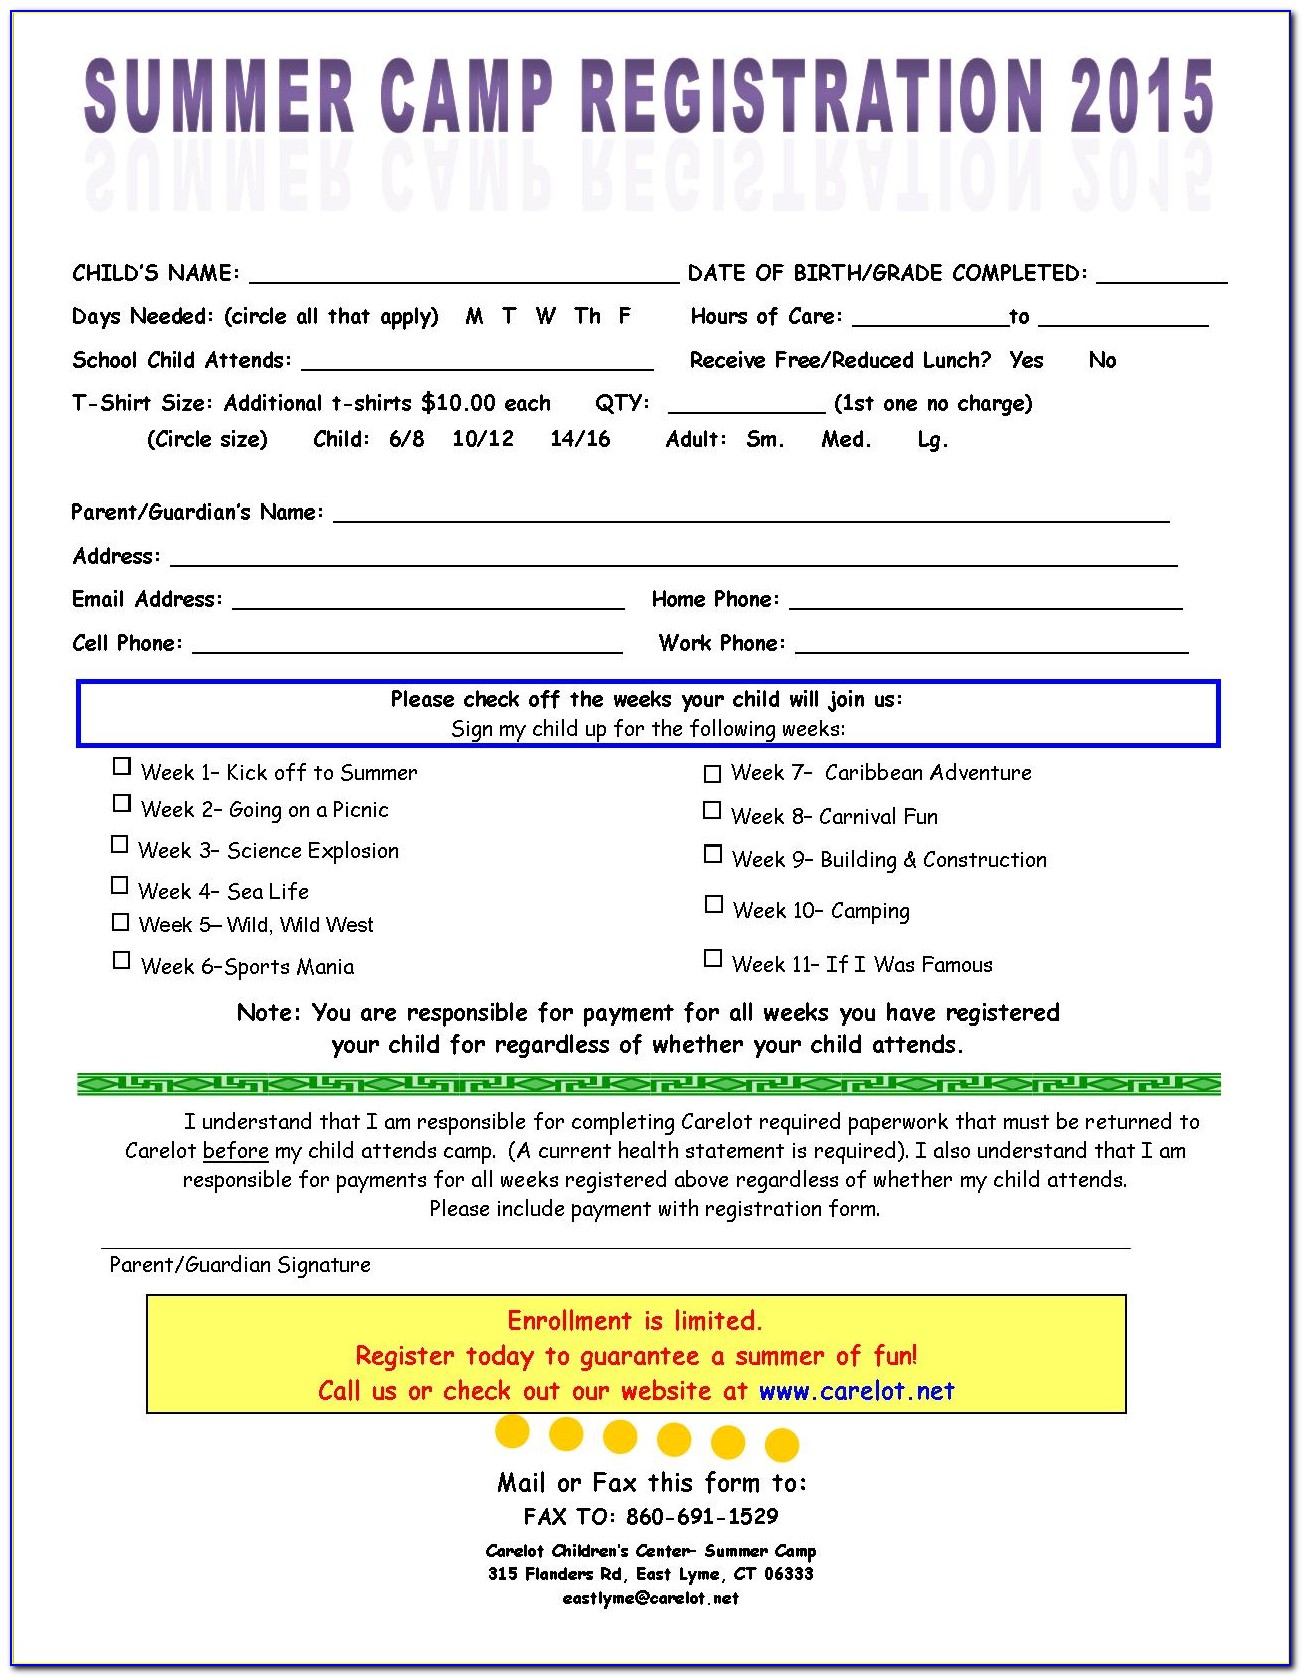 Summer Camp Registration Form Template